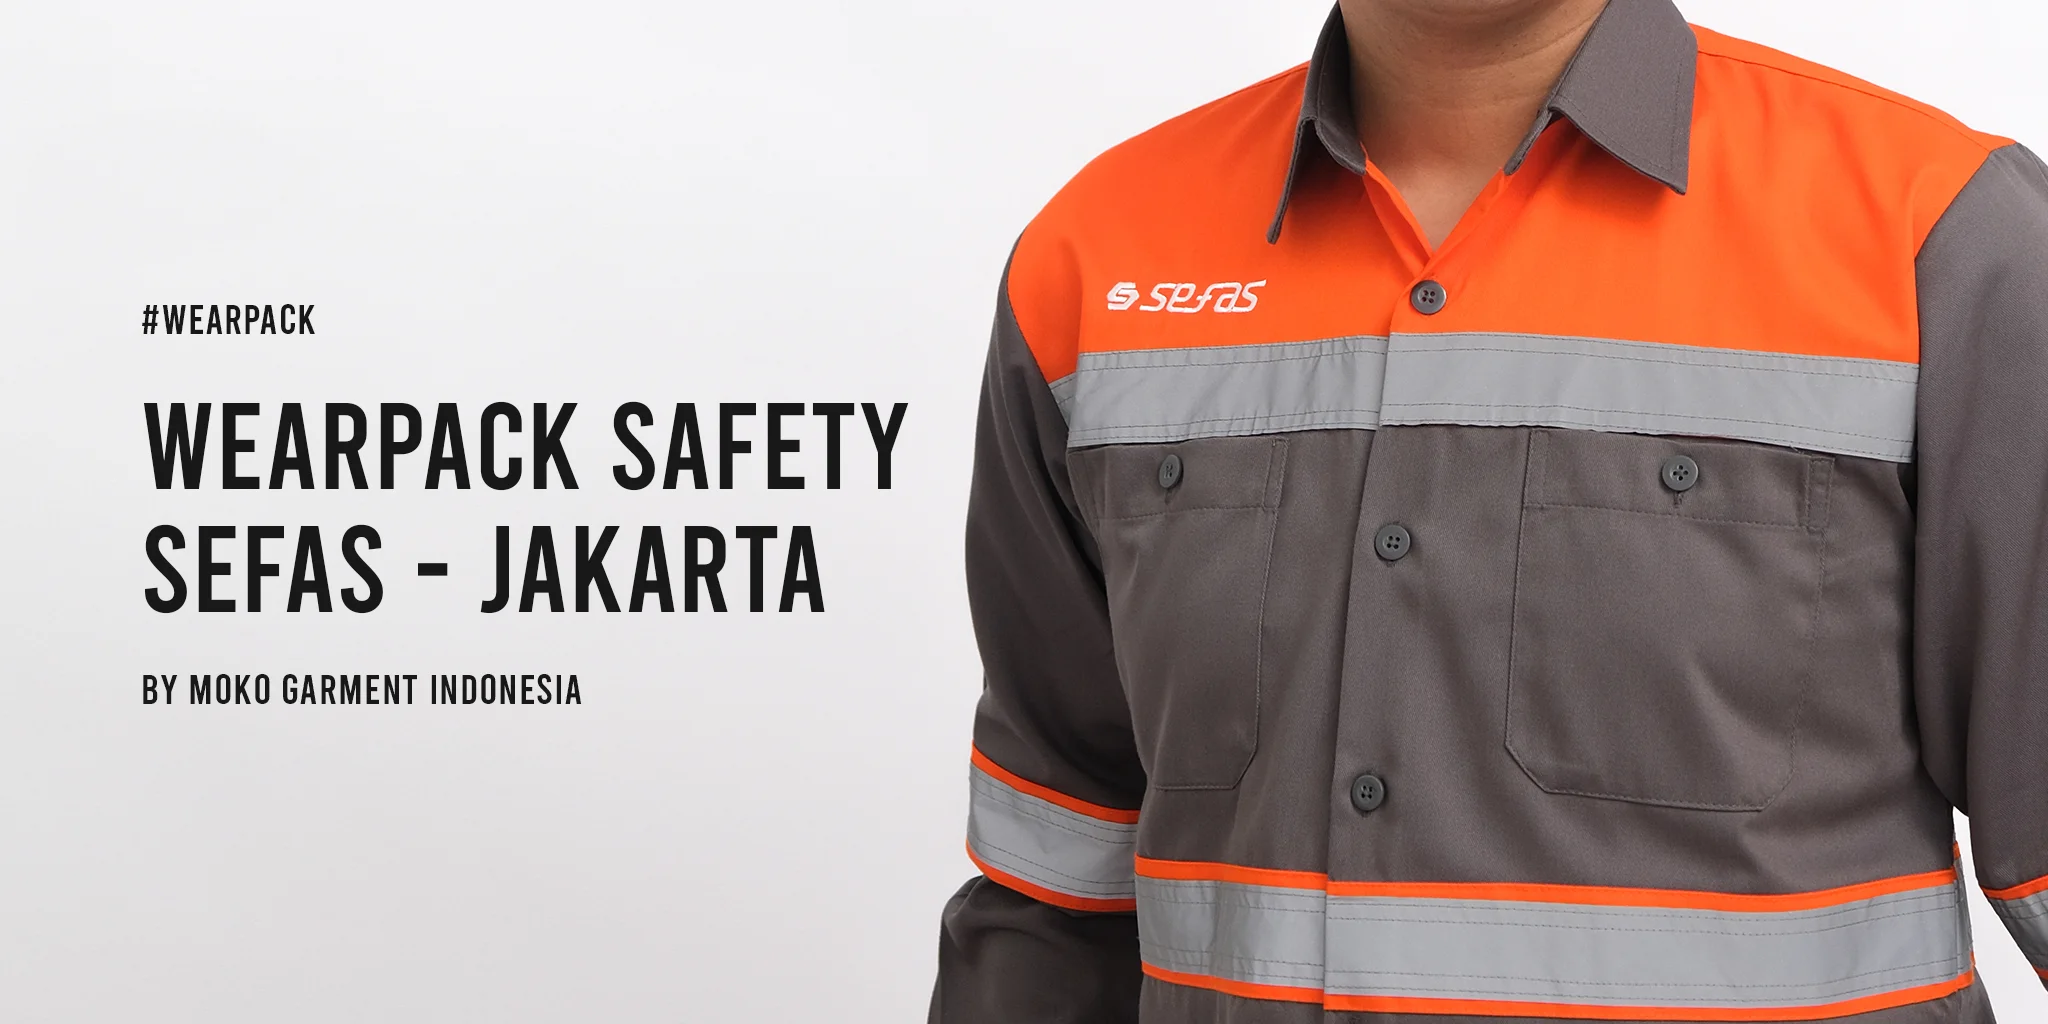 Wearpack Safety SEFAS Jakarta